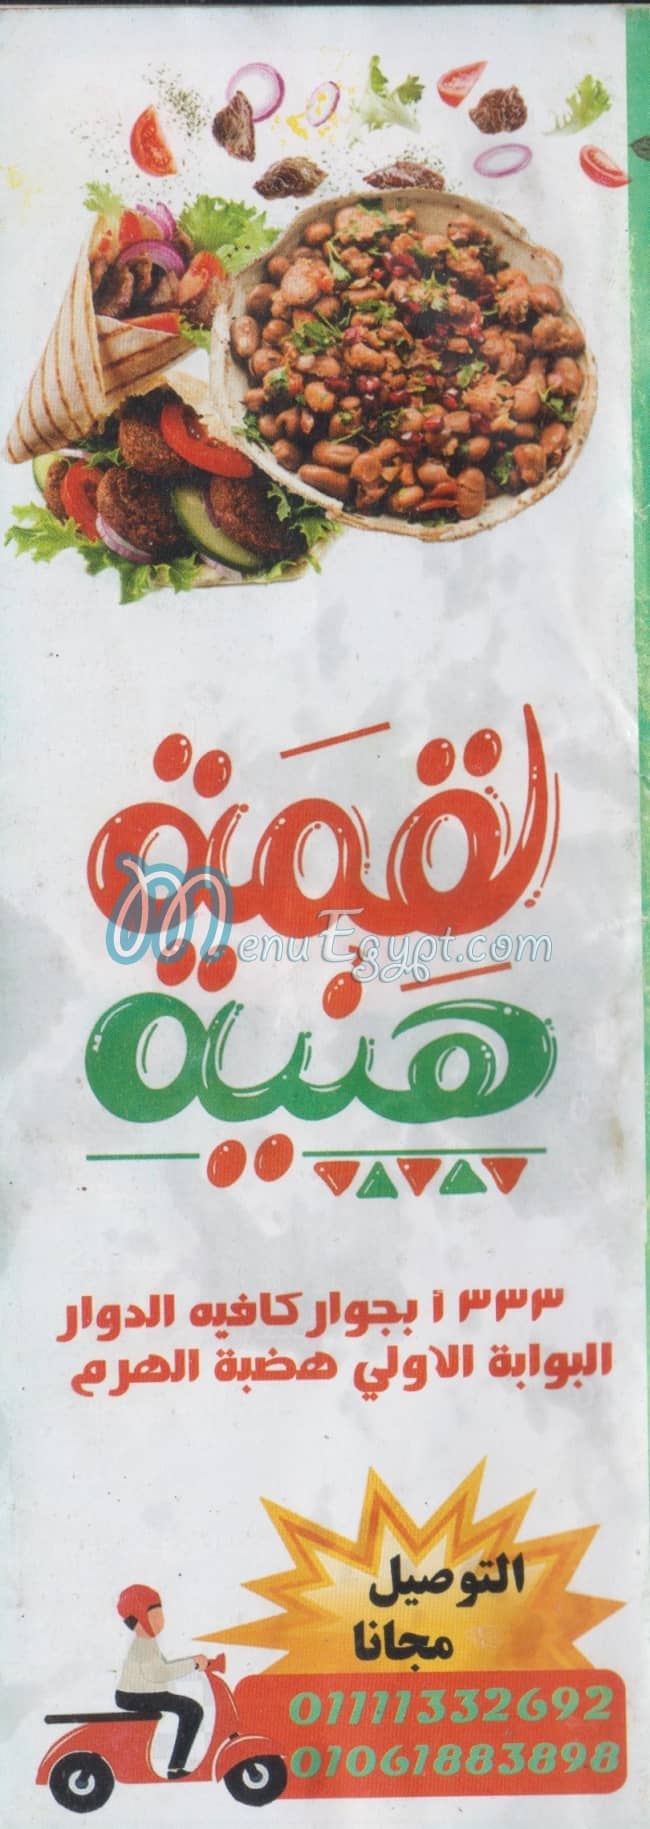 Loqma Hanya menu